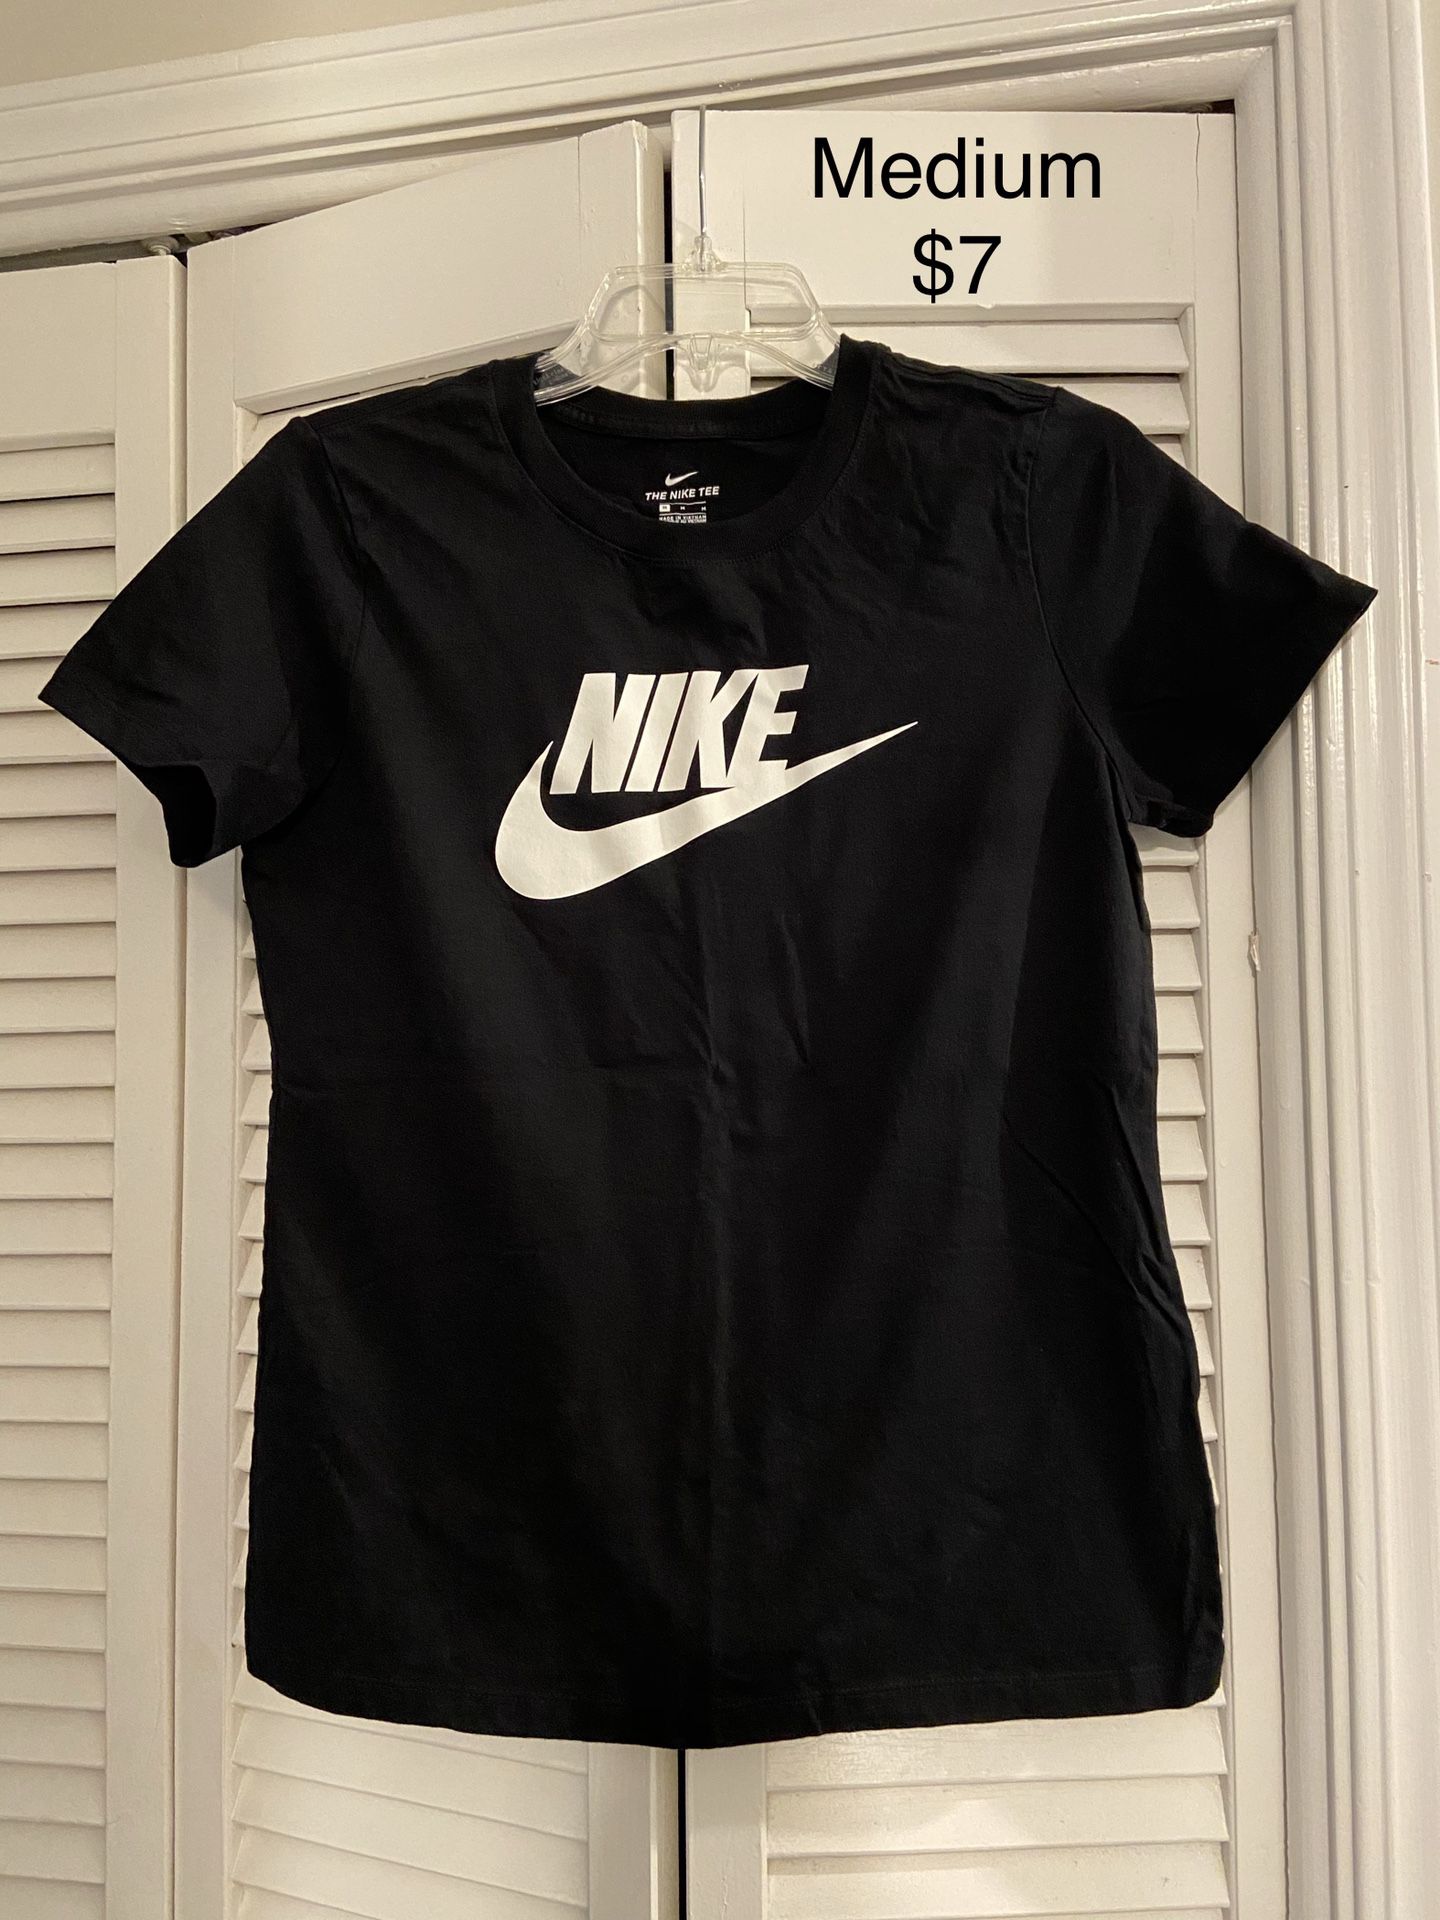 Nike Black Medium T-shirt